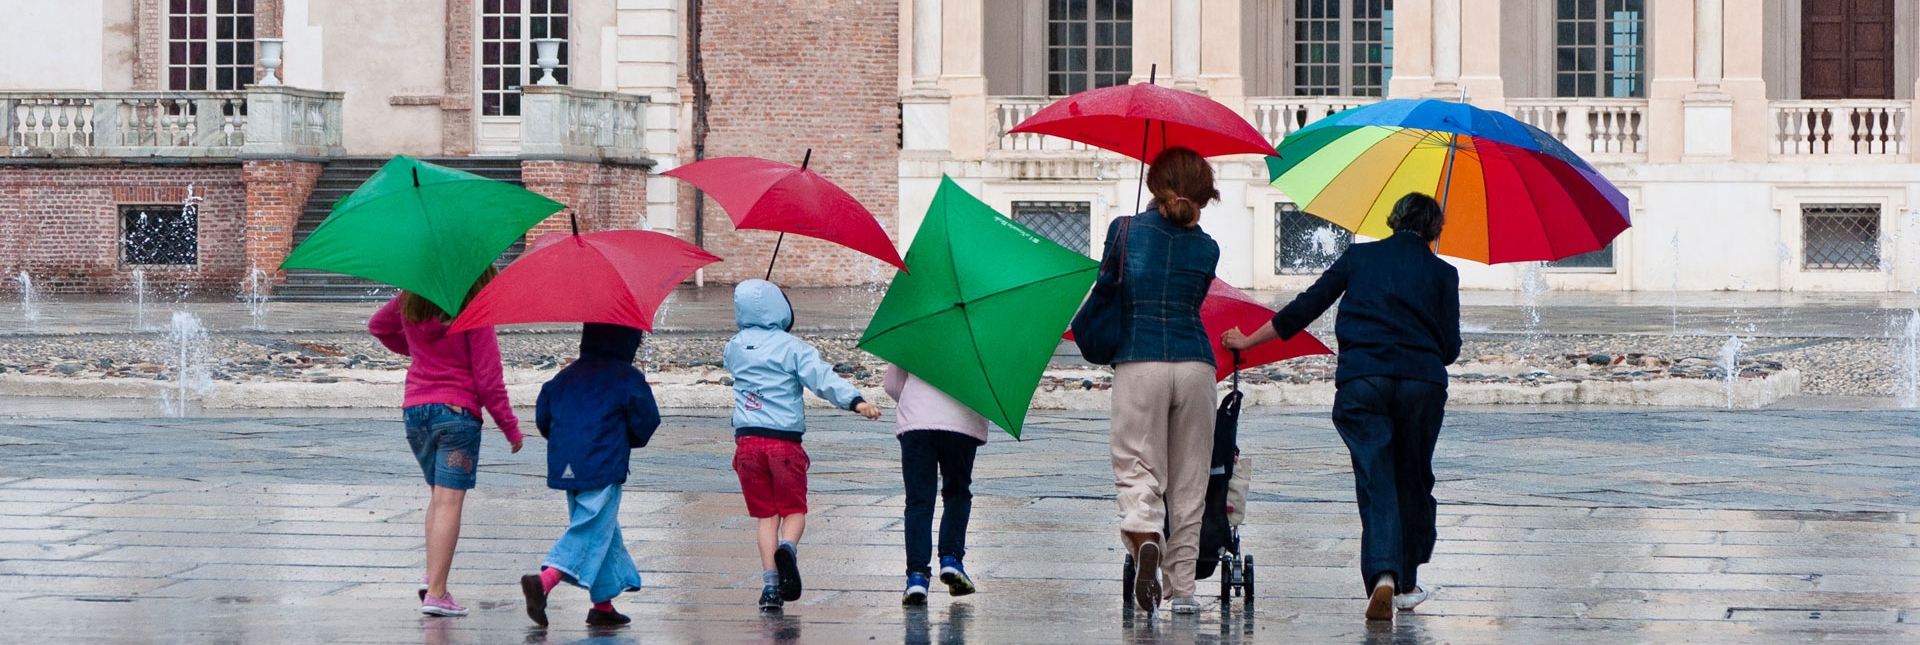 Visitatori con ombrelli colorati nella Corte d'onore